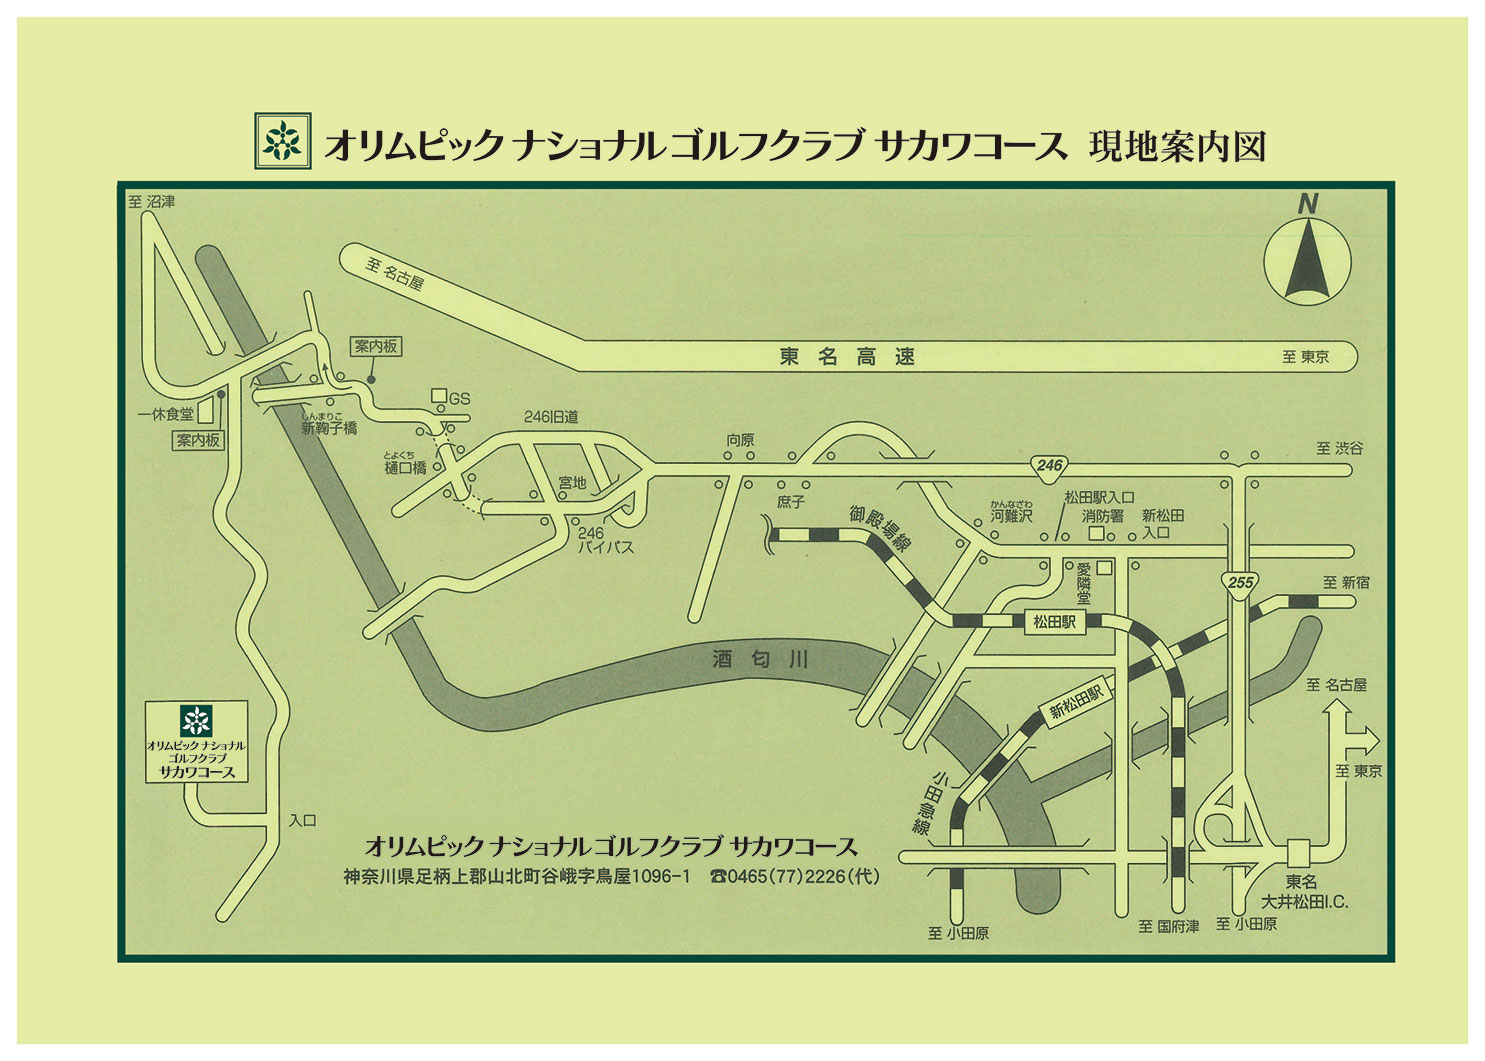 神奈川県のゴルフ場　オリムピックナショナルゴルフクラブ サカワコースの公式サイトのアクセスMAP